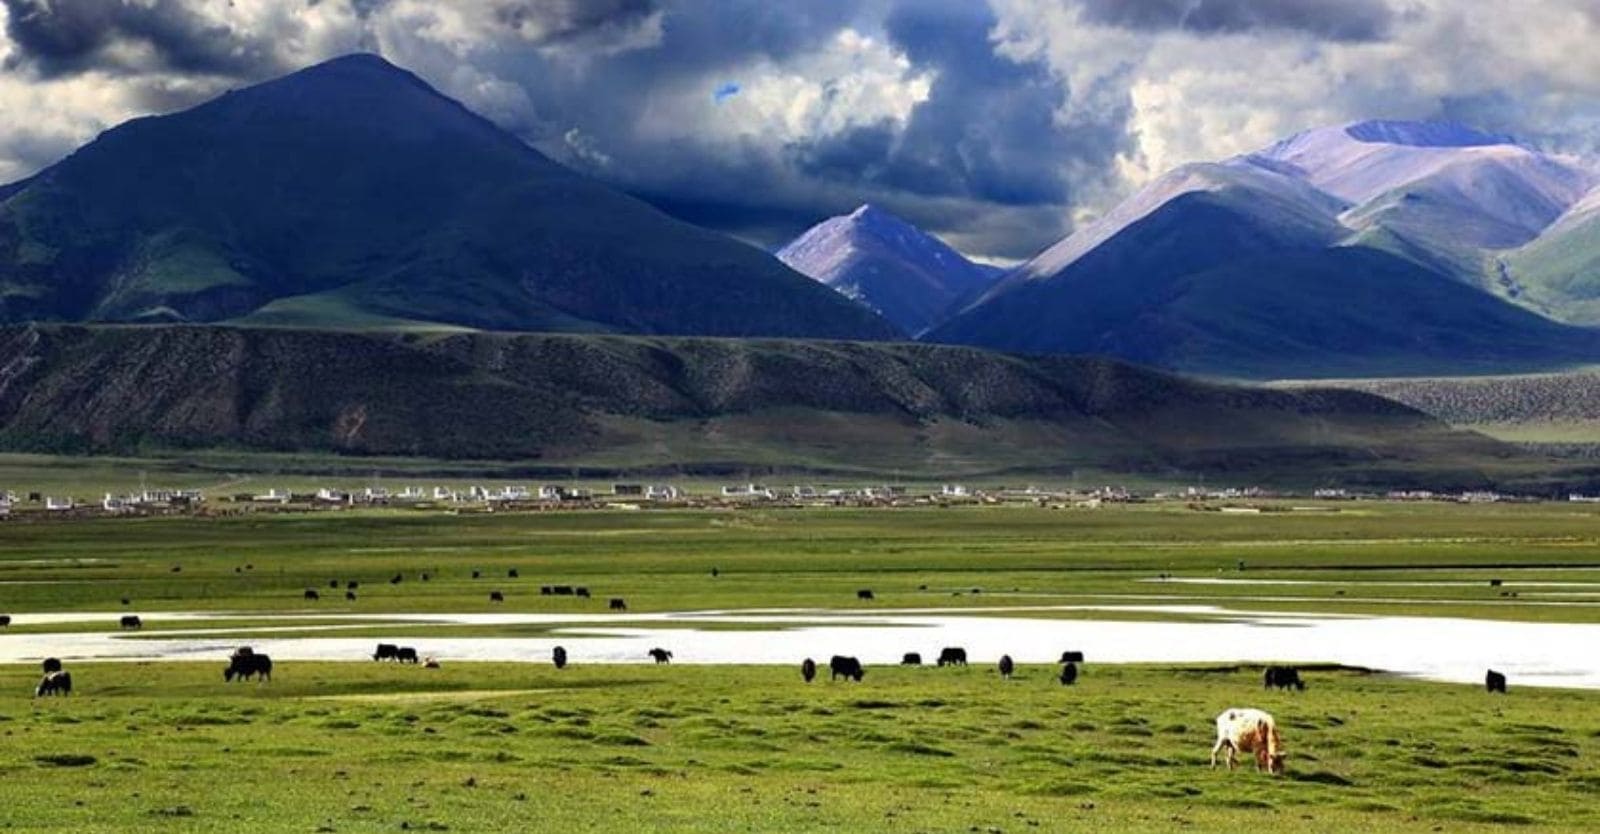 Nagqu tibet